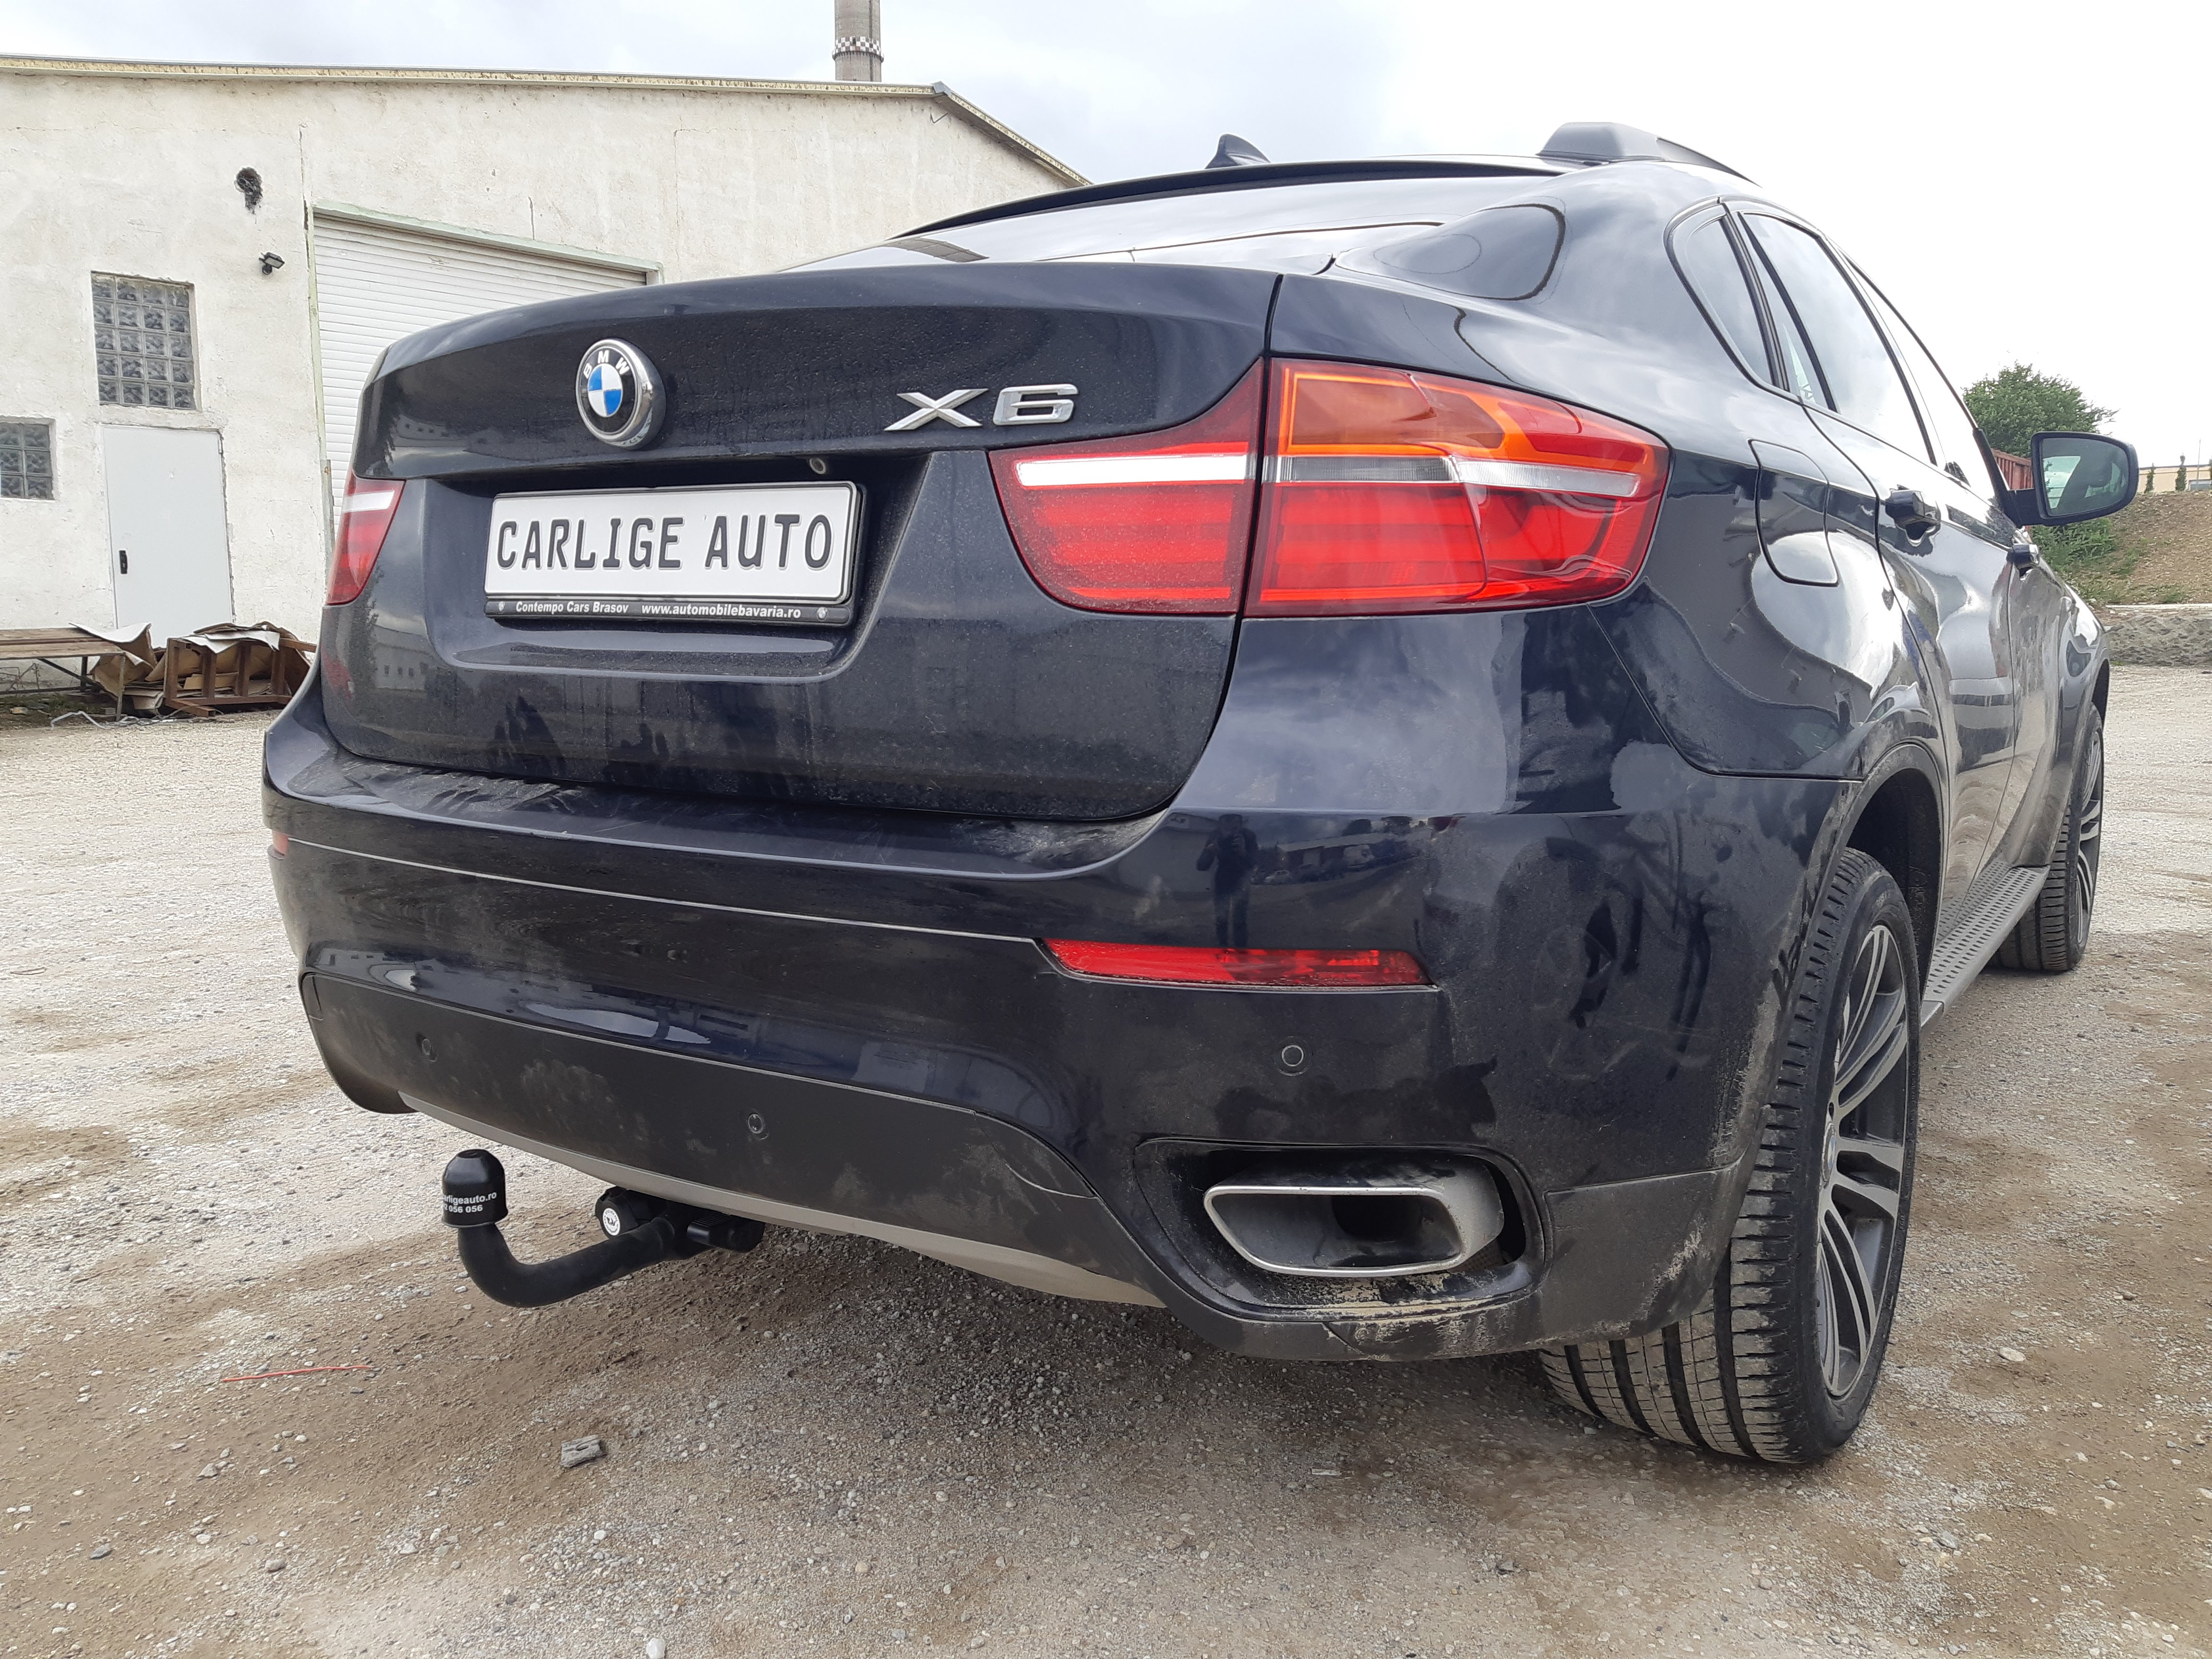 Carlig remorcare BMW X6 E71 SUV